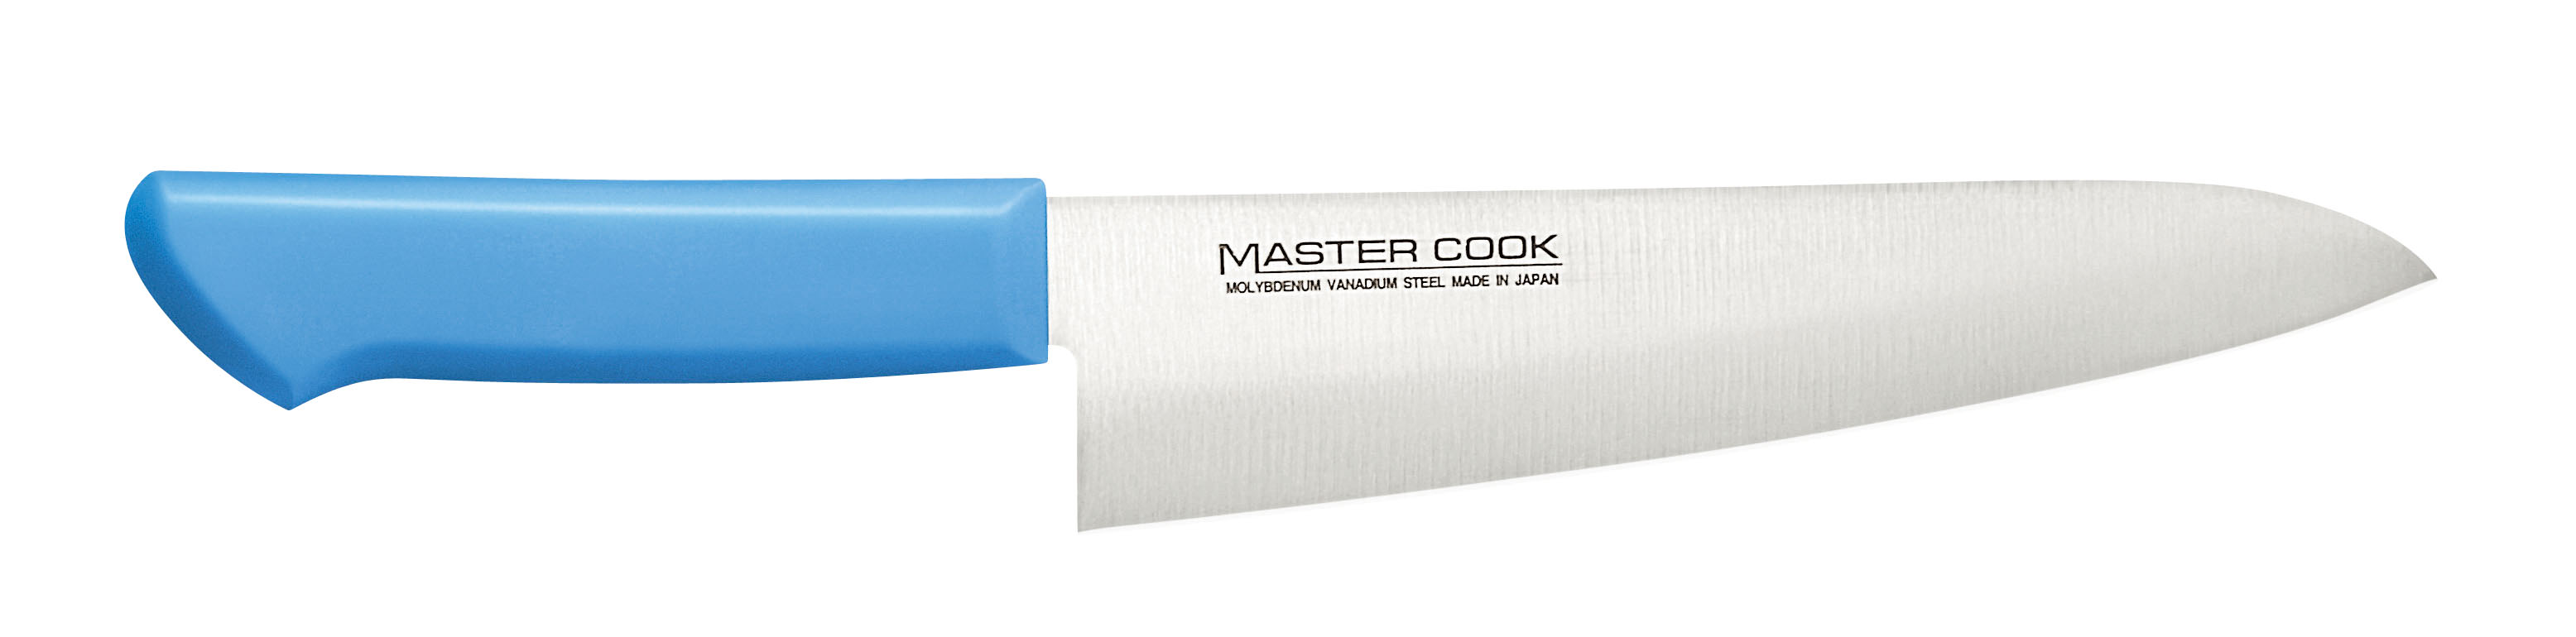 マスターコック抗菌カラー庖丁 洋出刃 MCDK-210W ブルー